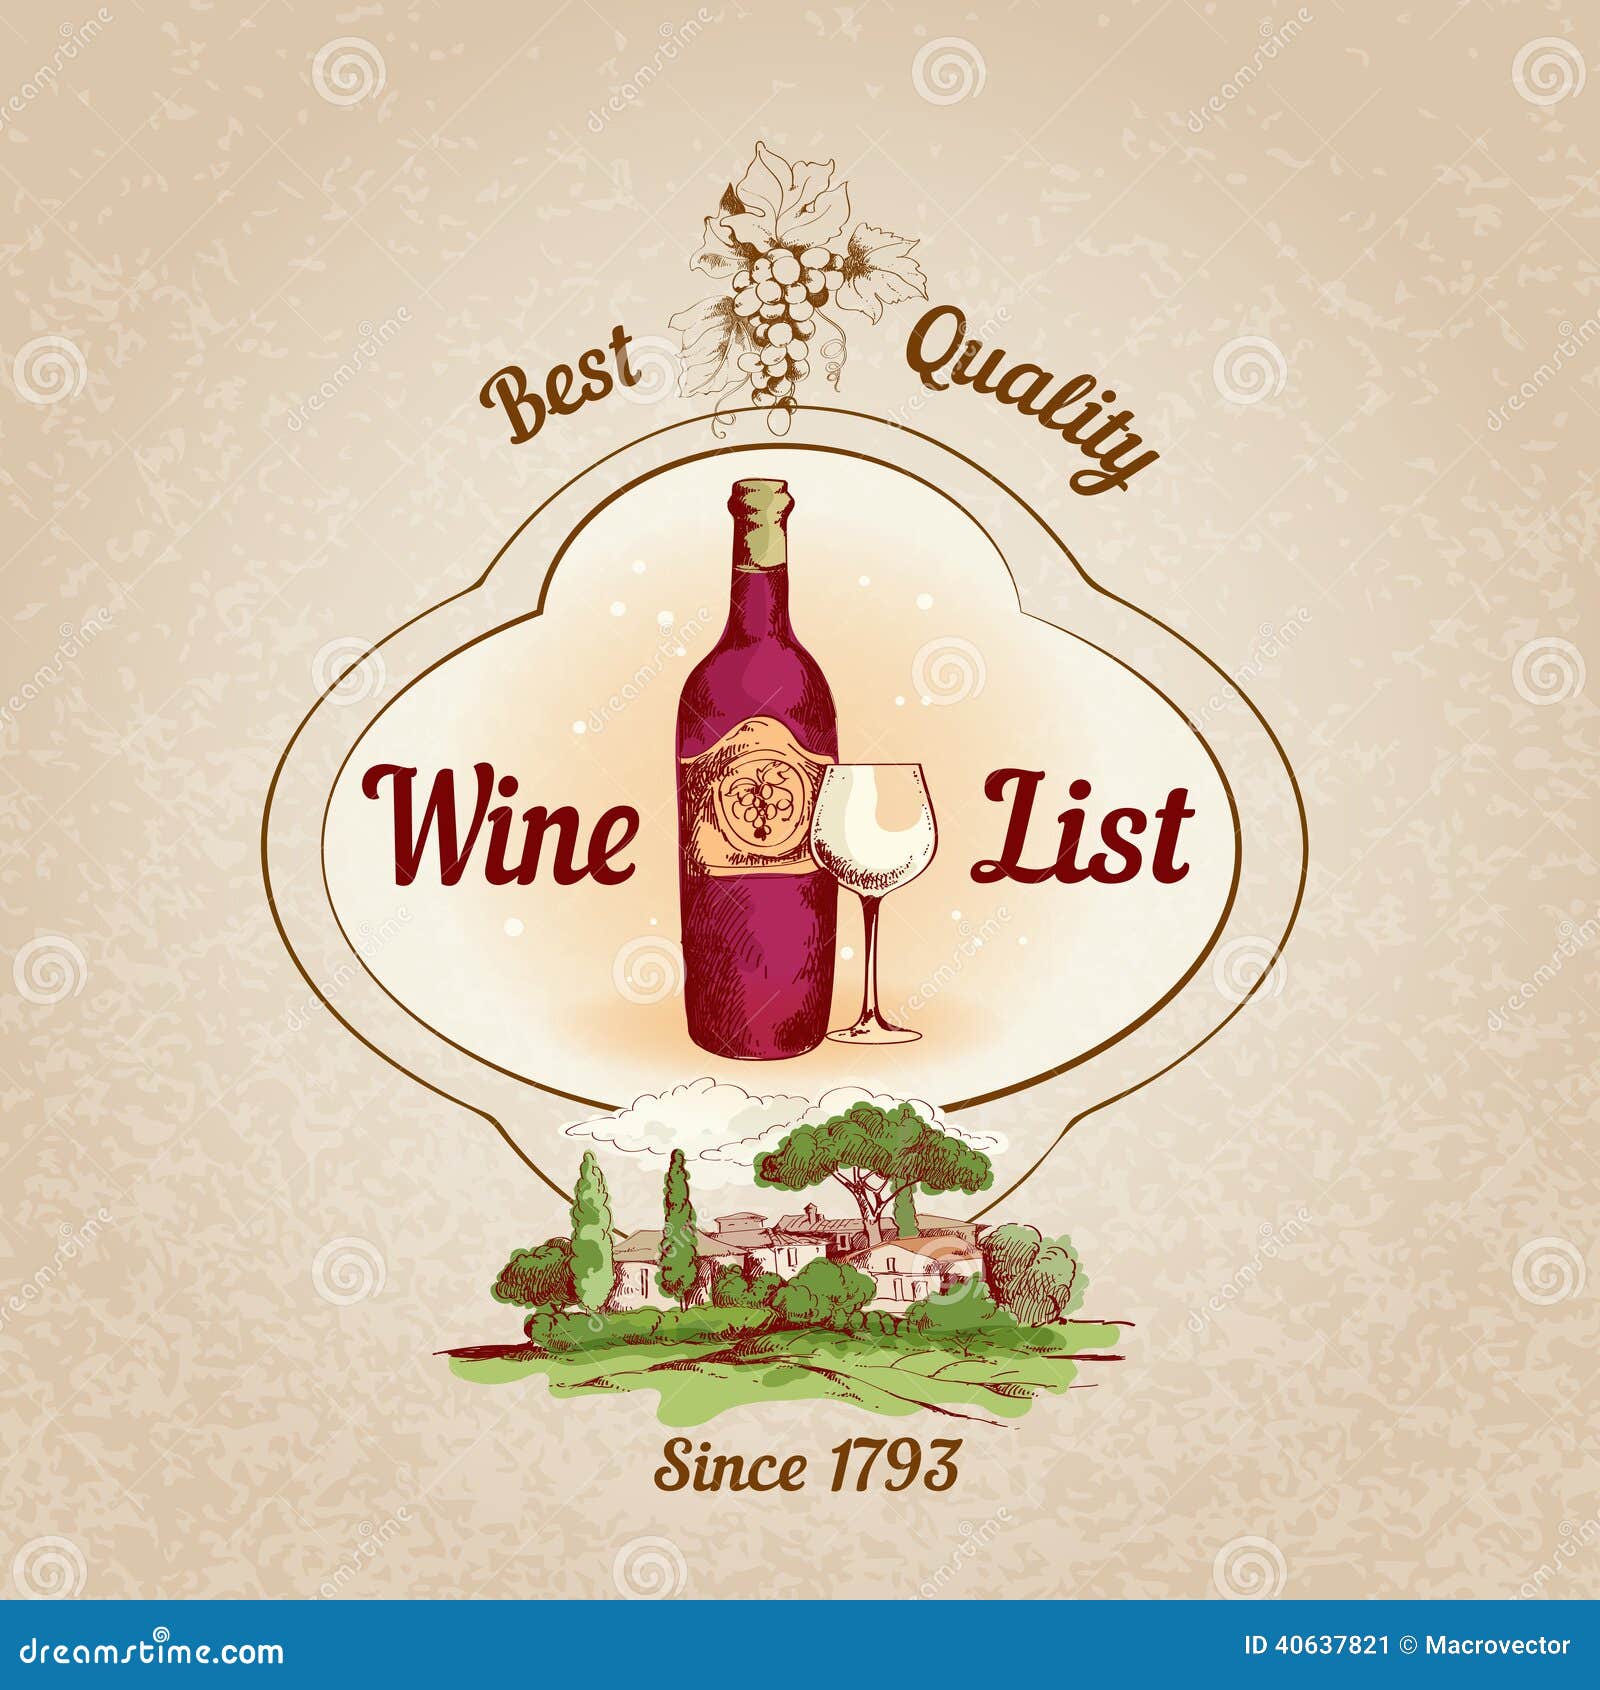 Best Vintage Wine 109